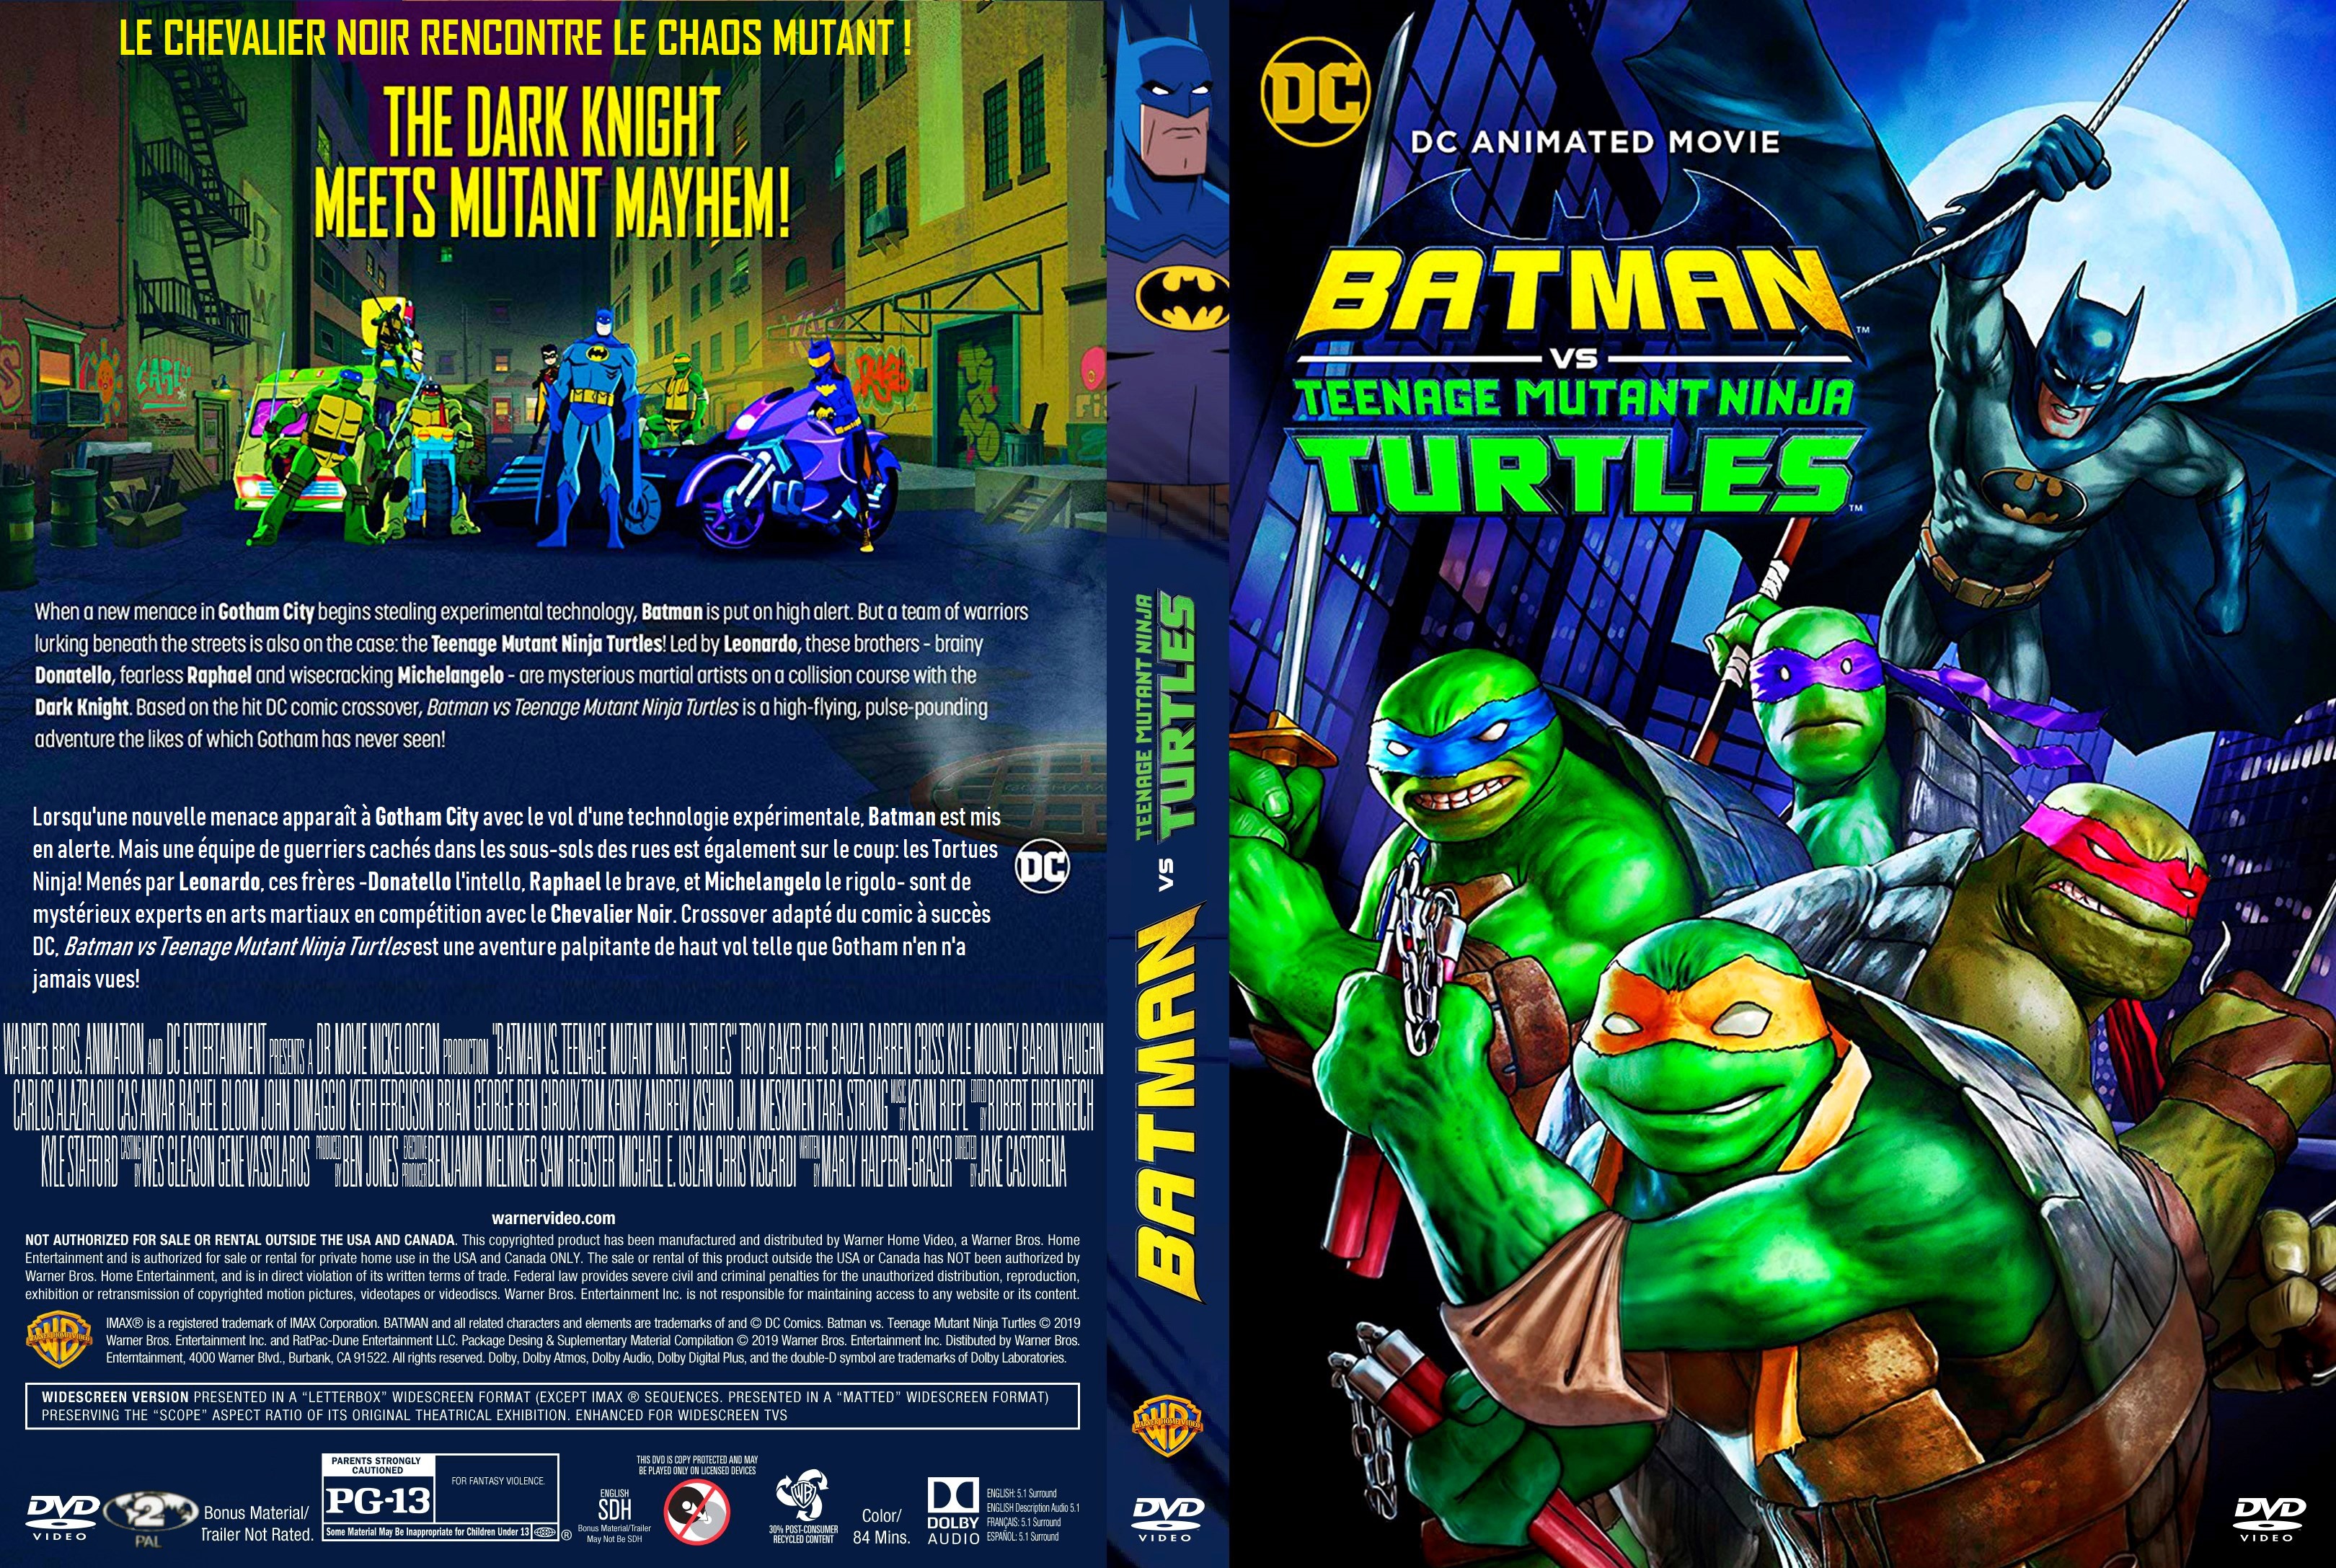 Jaquette DVD Batman vs Teenage Mutant Ninja Turtles custom v2